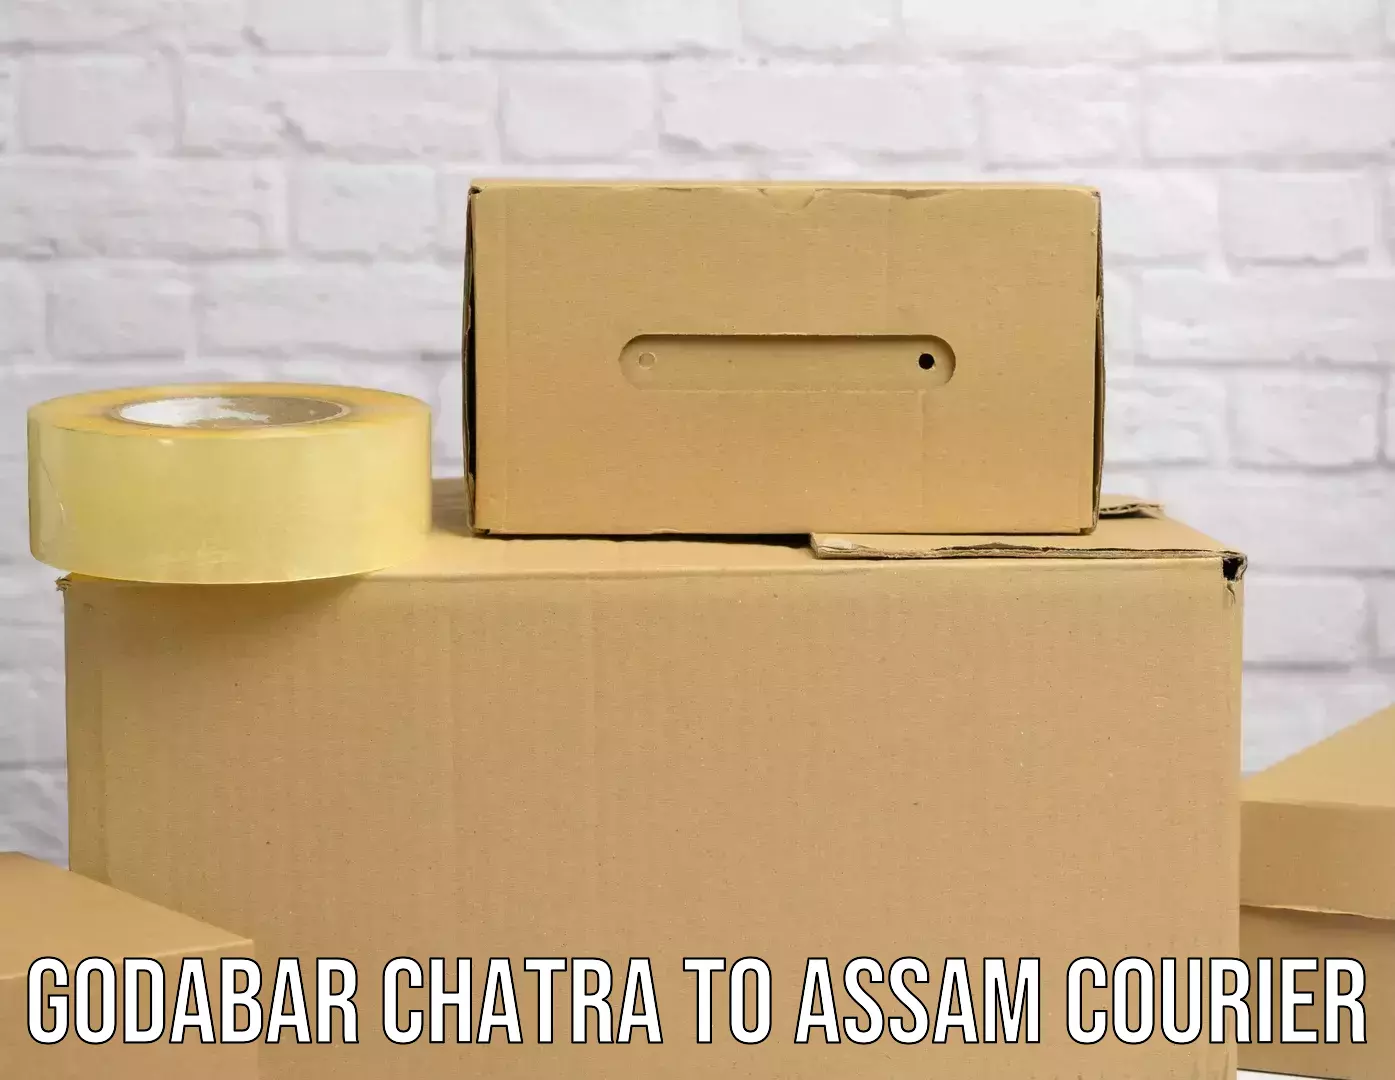 Comprehensive logistics Godabar Chatra to Barpeta